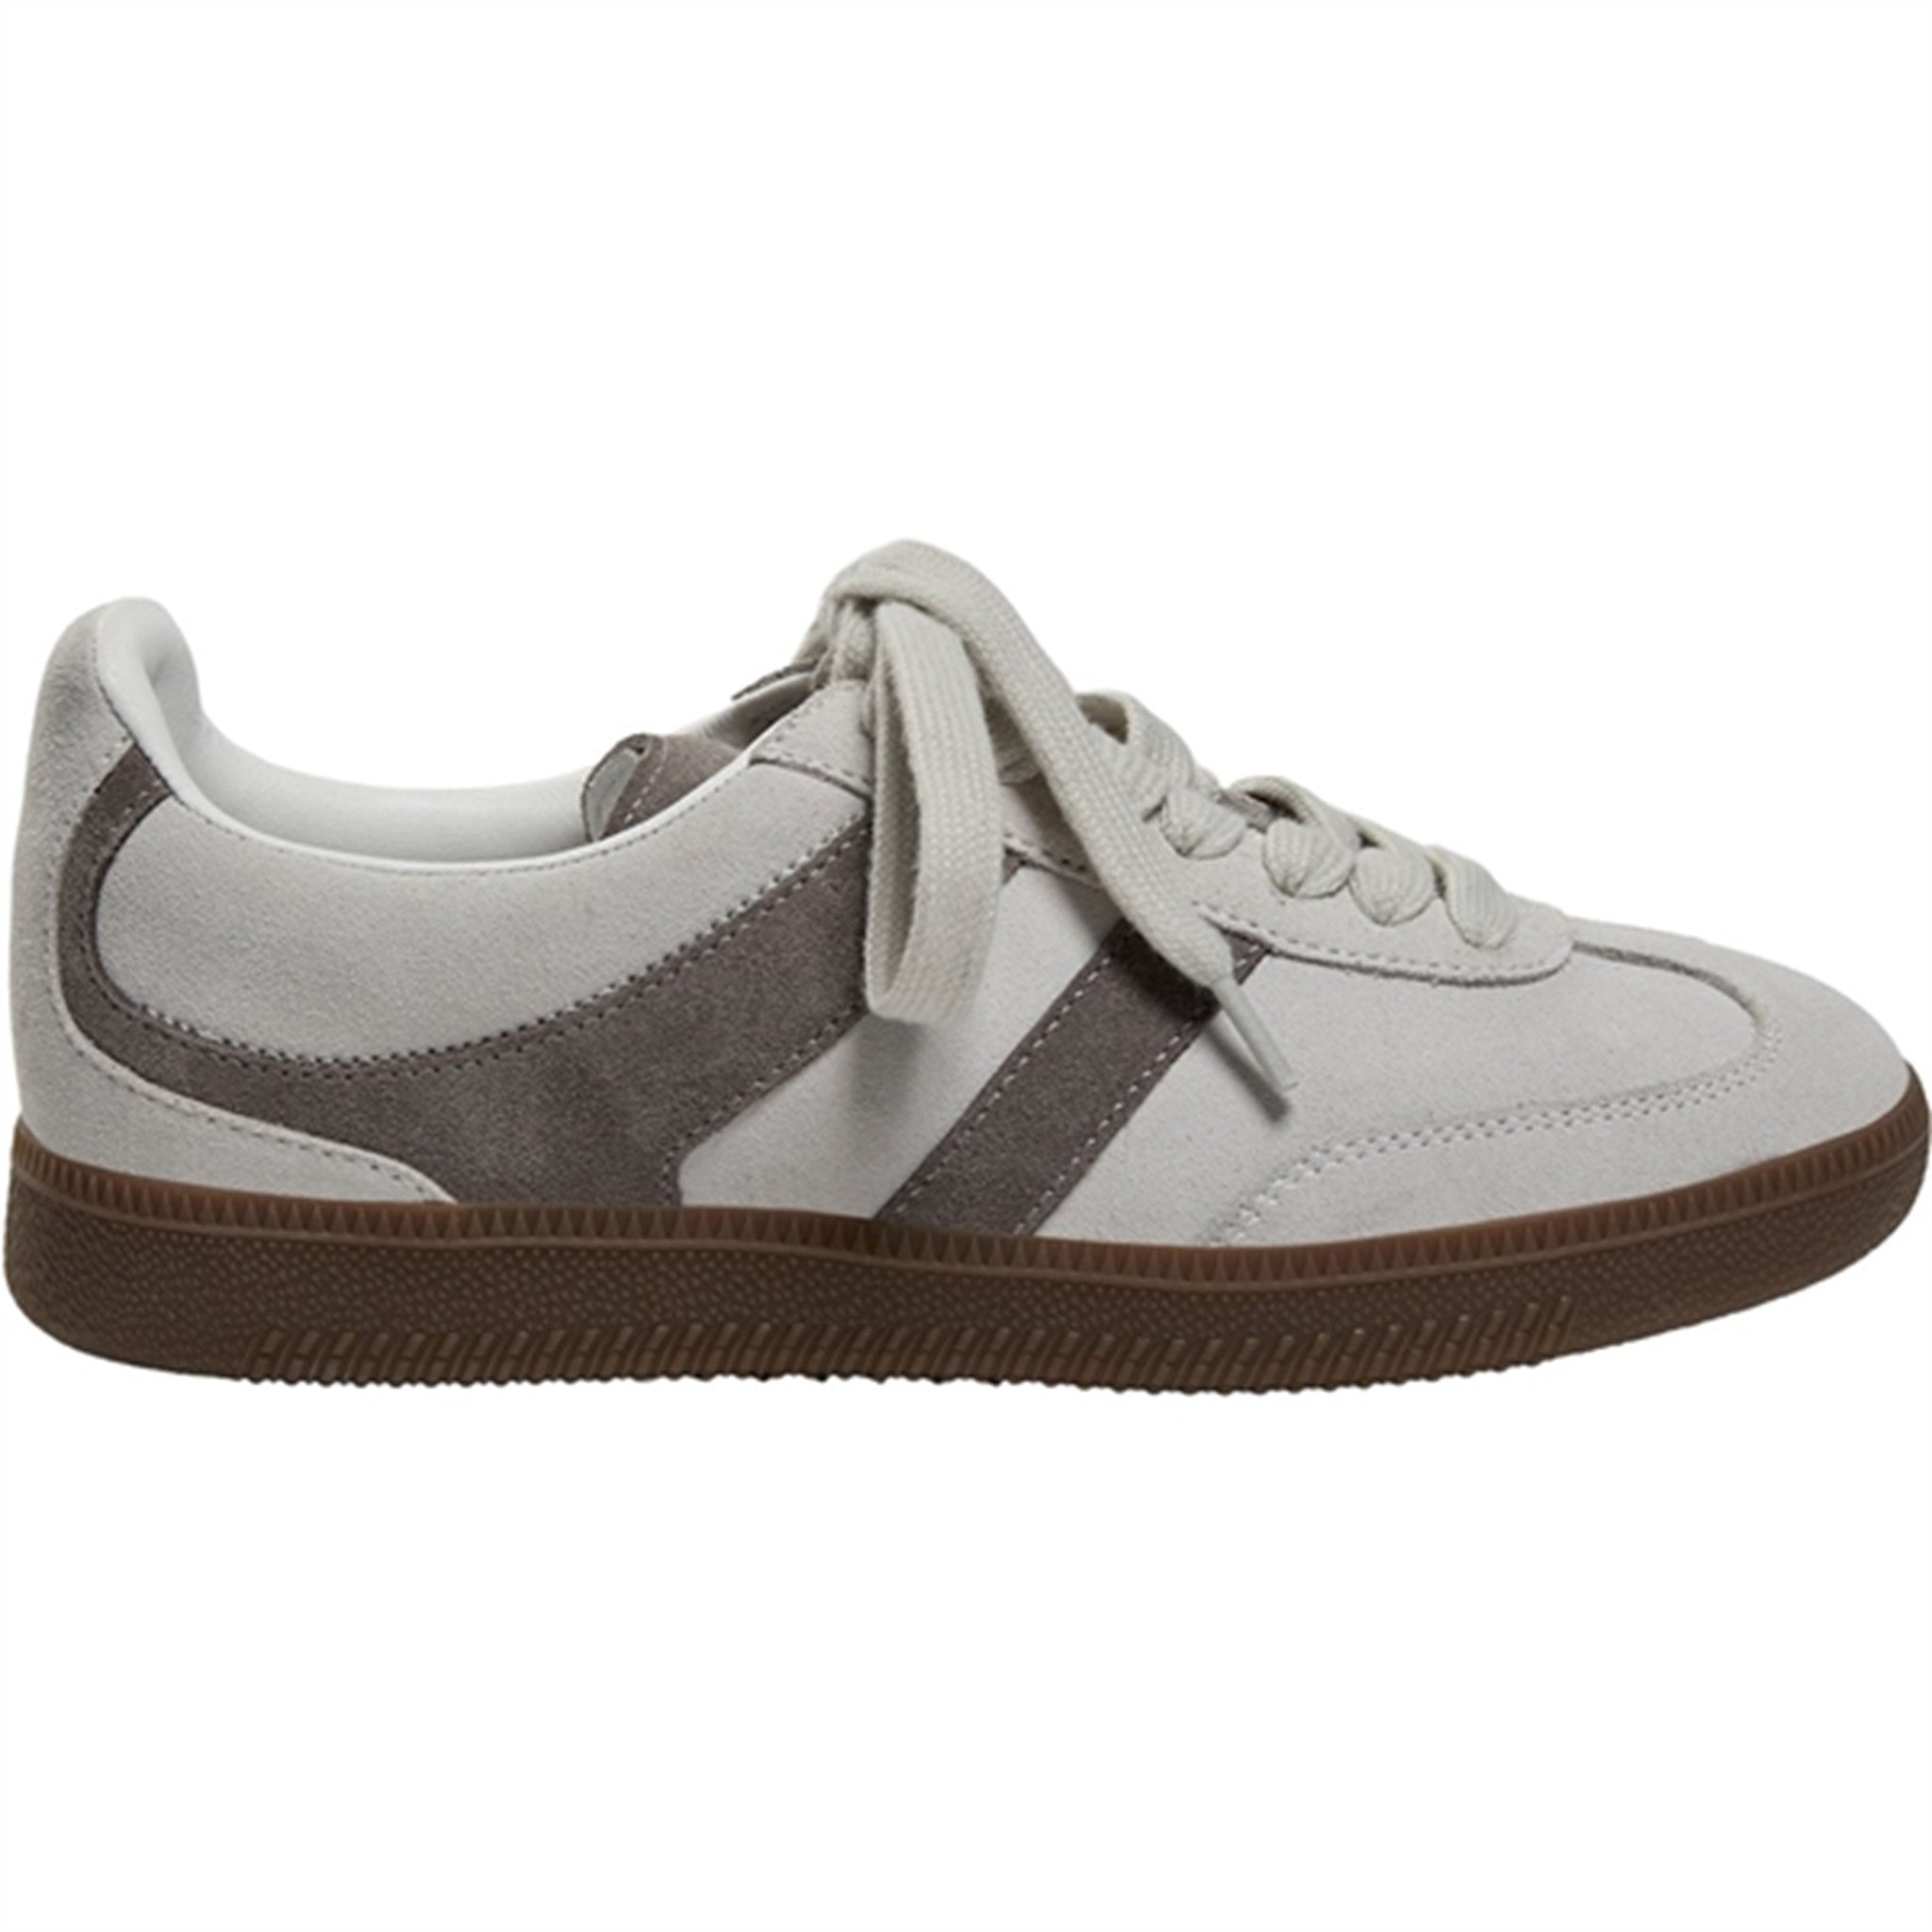 Sofie Schnoor Grey Sneakers - Str. 34